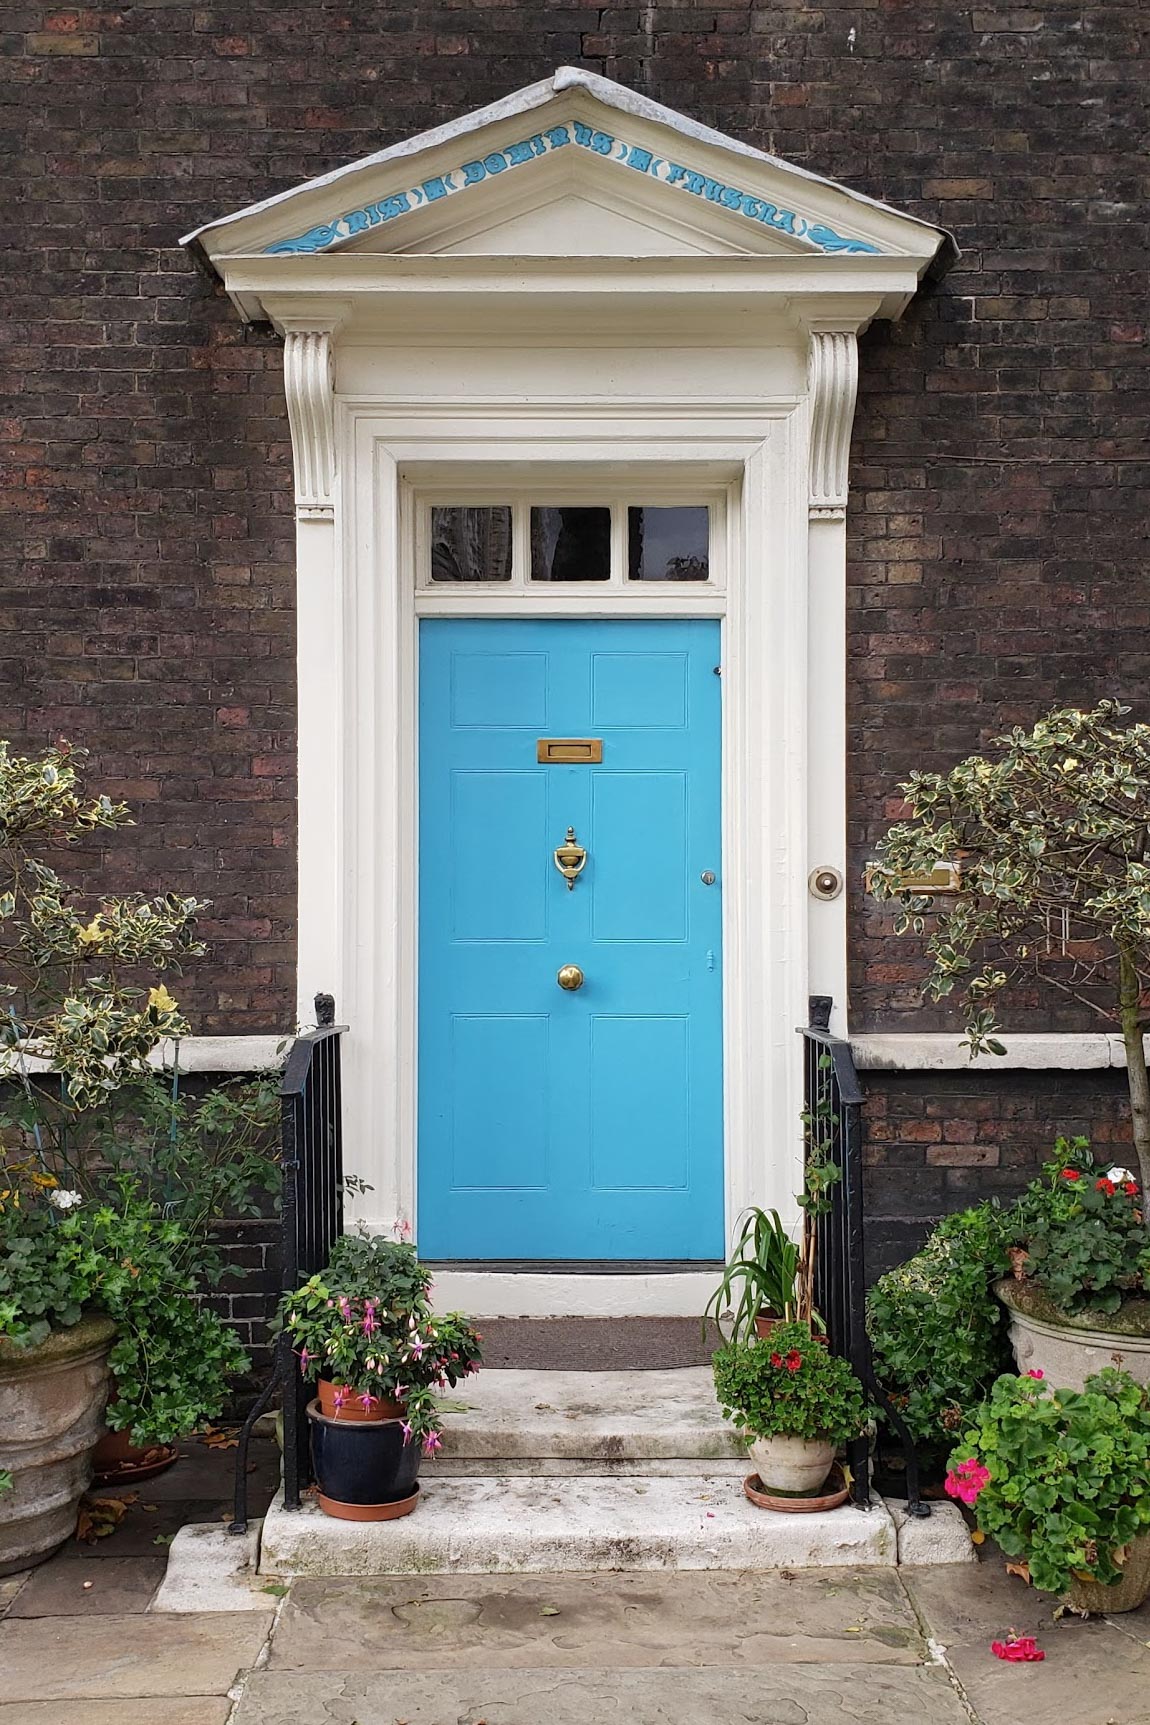 Tower of london blue door